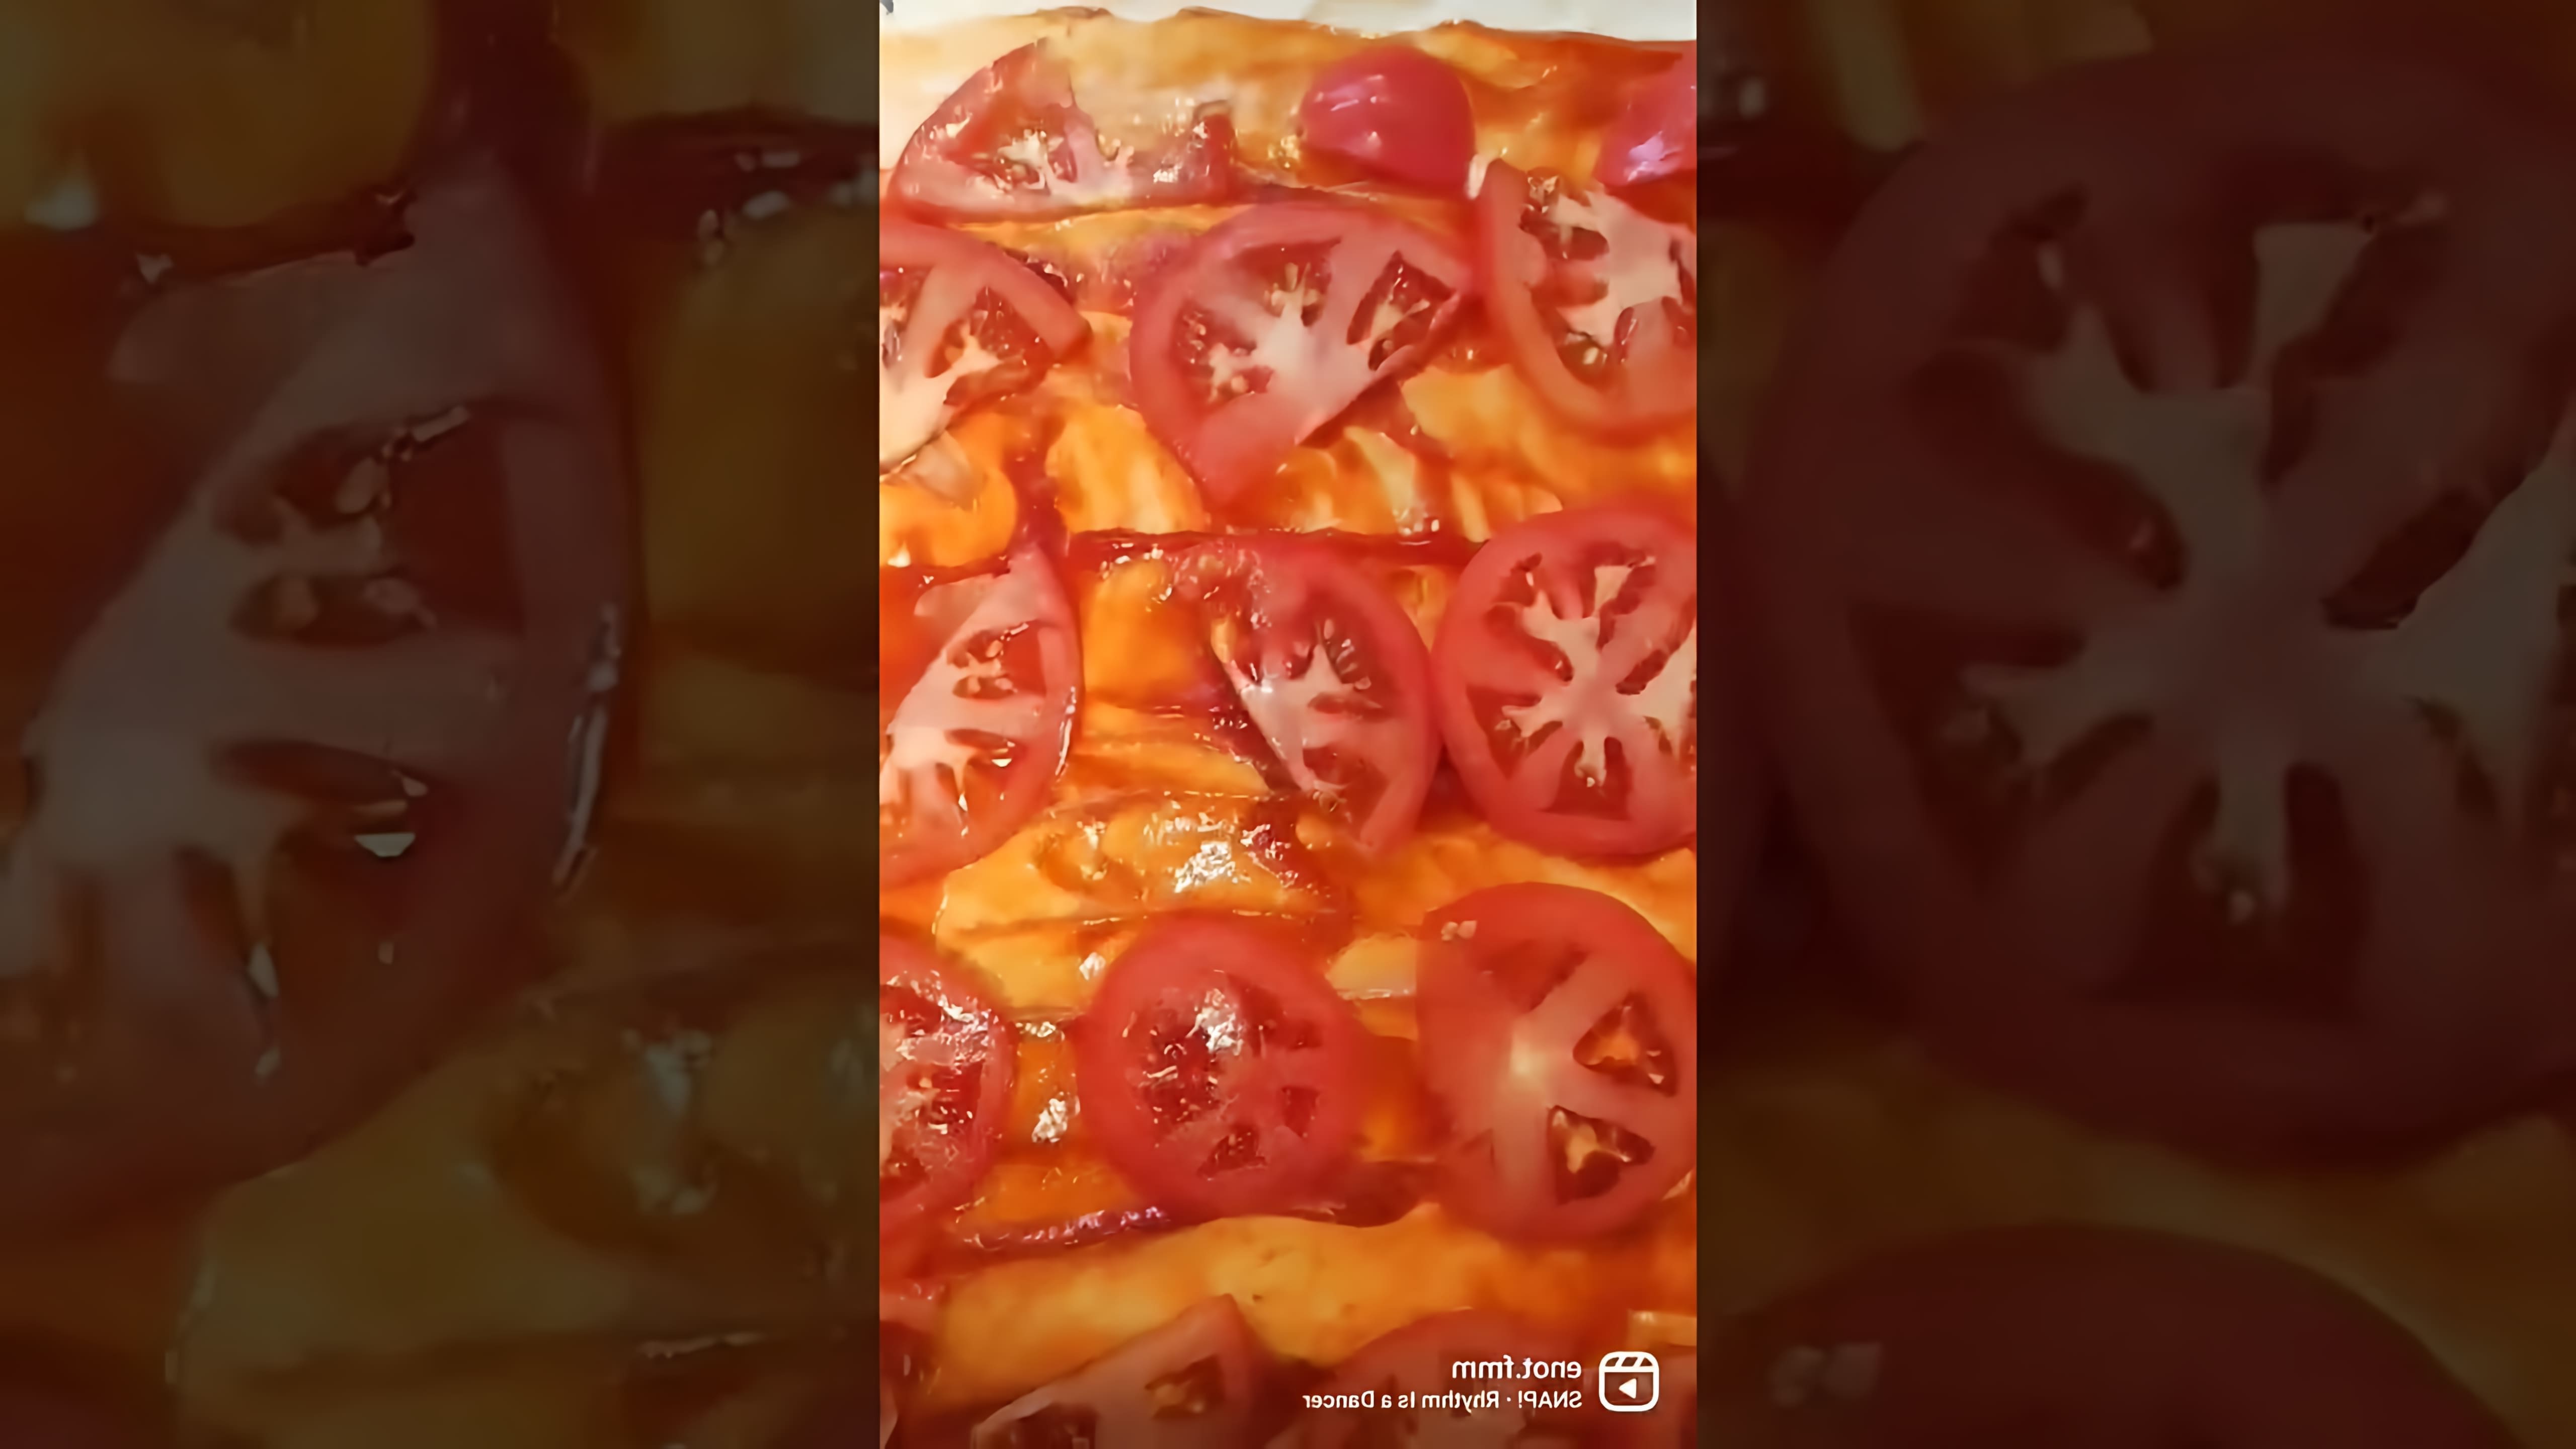 Пицца за 10 минут: рецепт быстрого и вкусного блюда

В этом видео-ролике вы узнаете, как приготовить пиццу всего за 10 минут